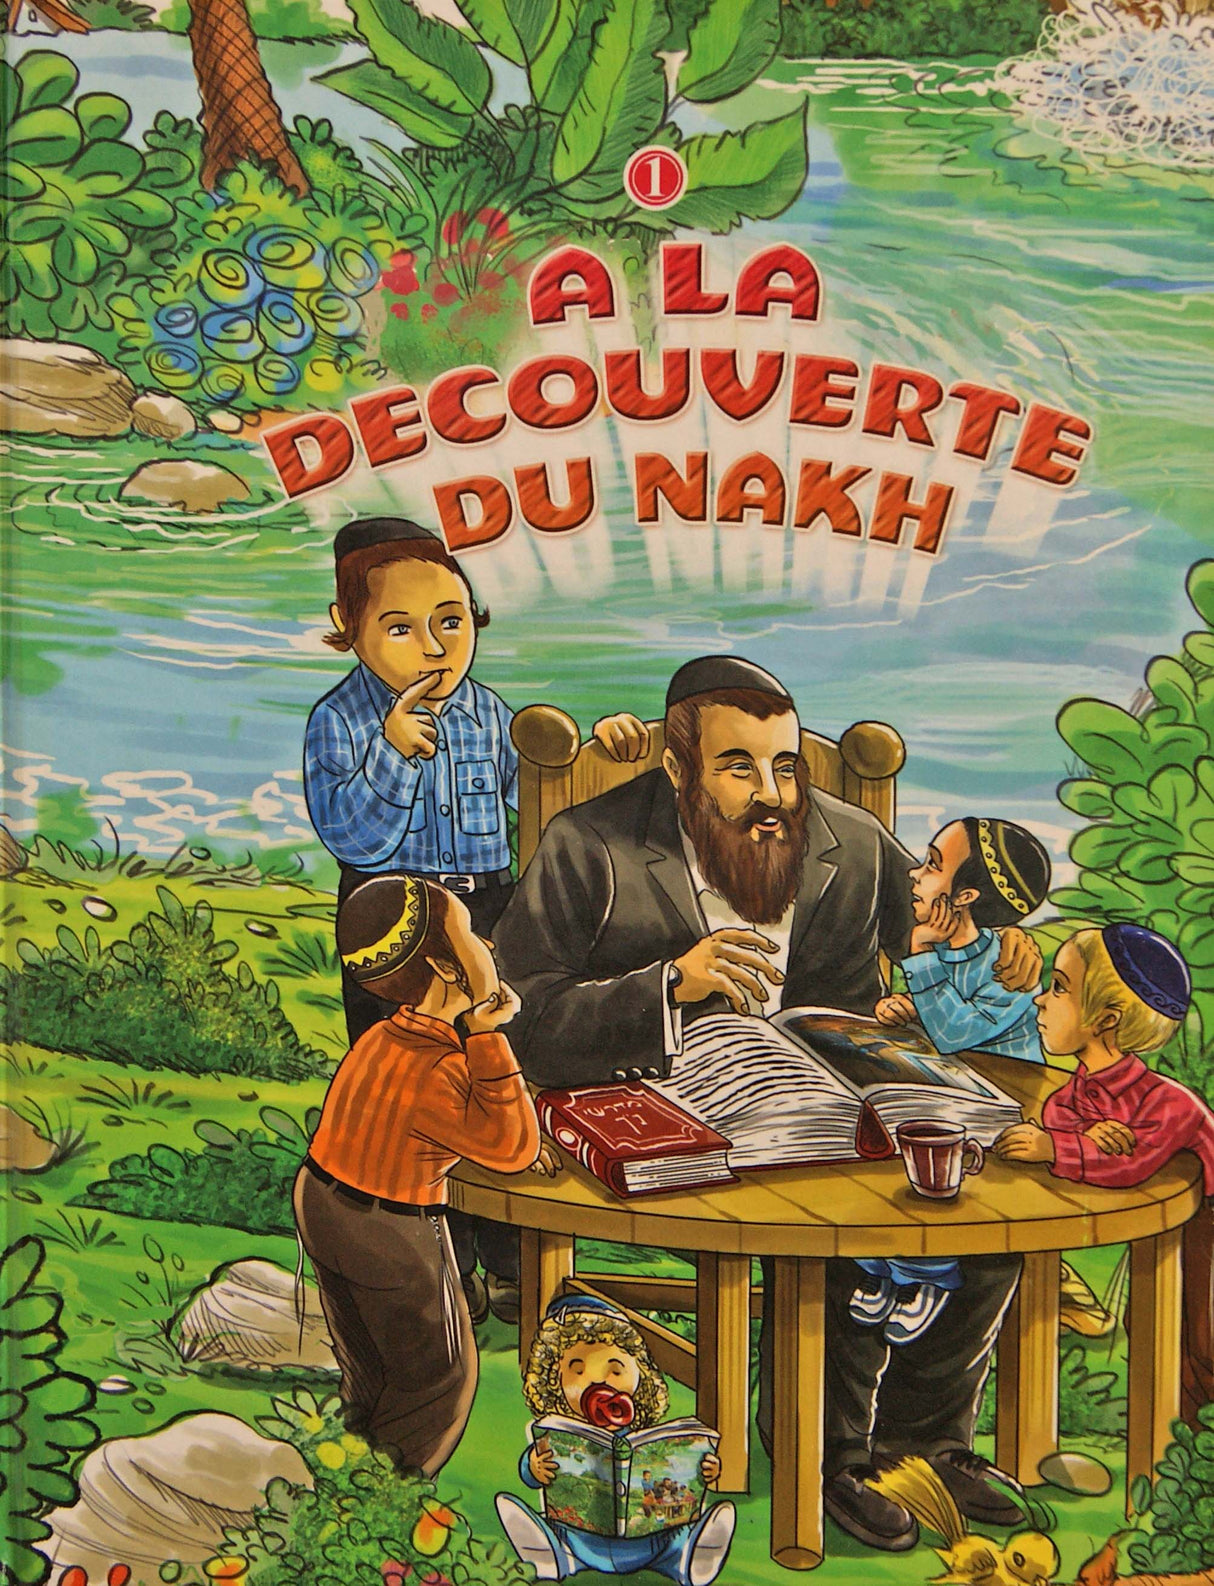 A La Decouverte Du Nakh vol 1